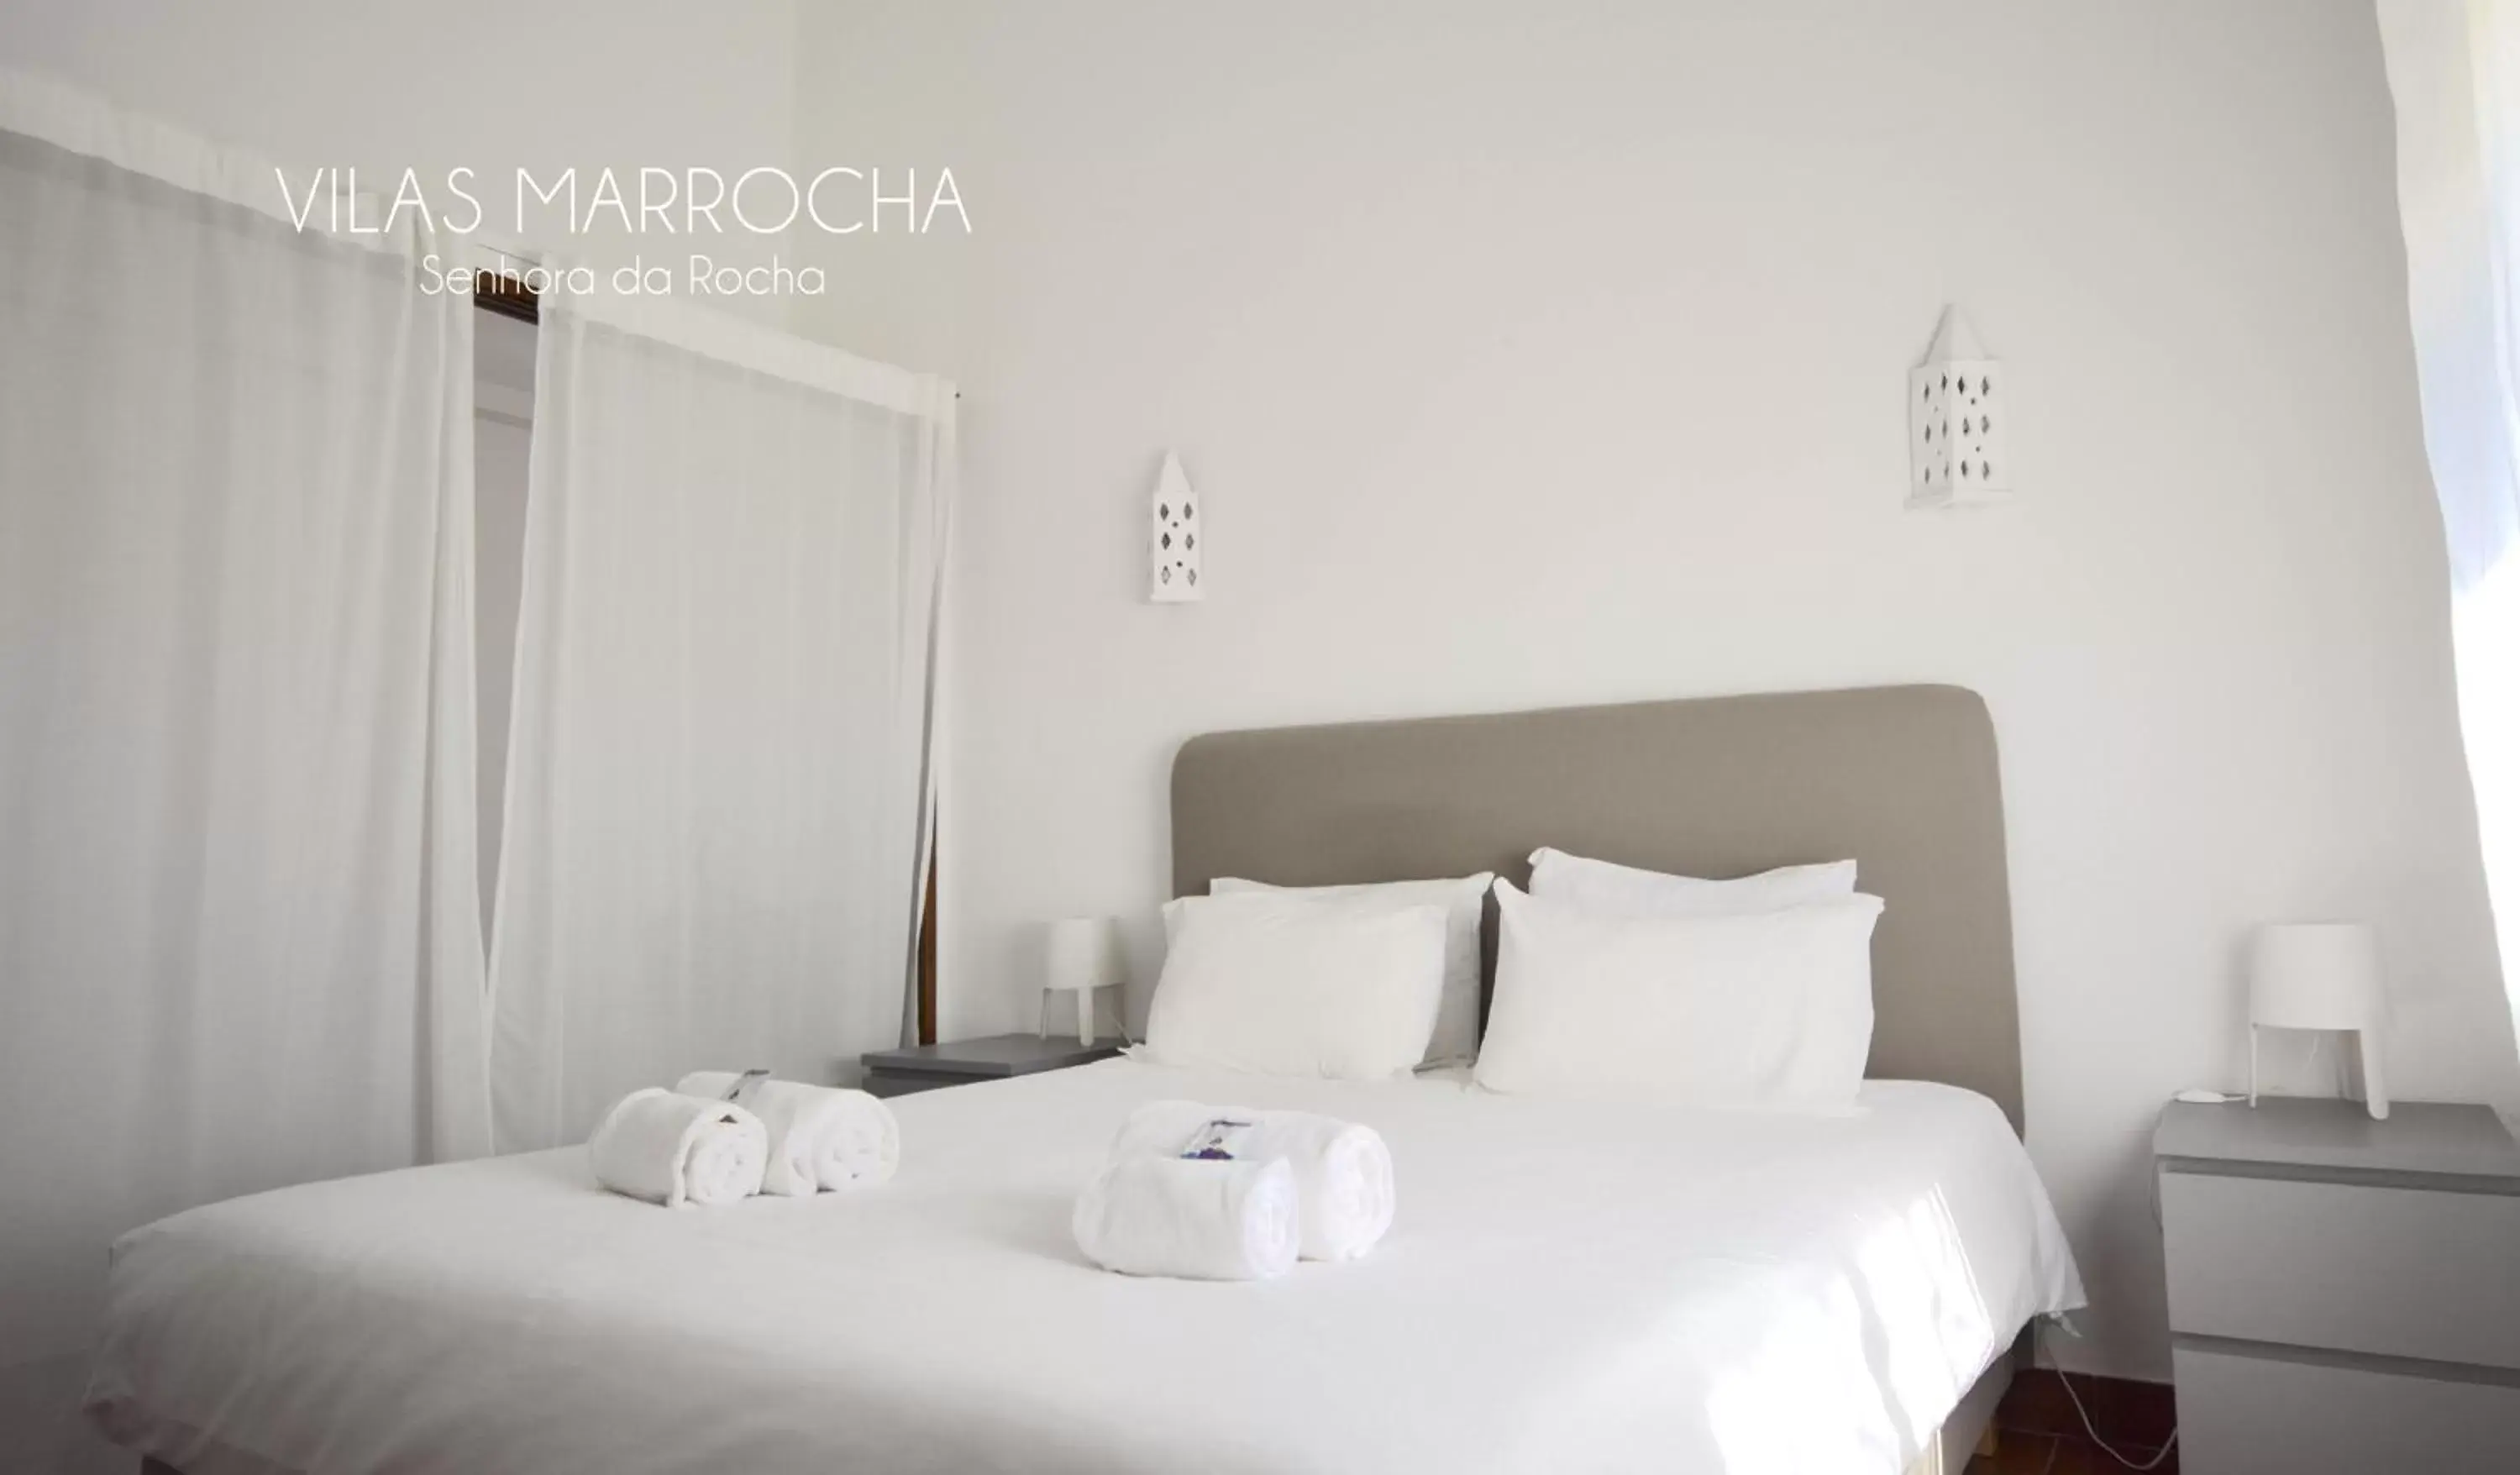 Bed in Vilas Marrocha